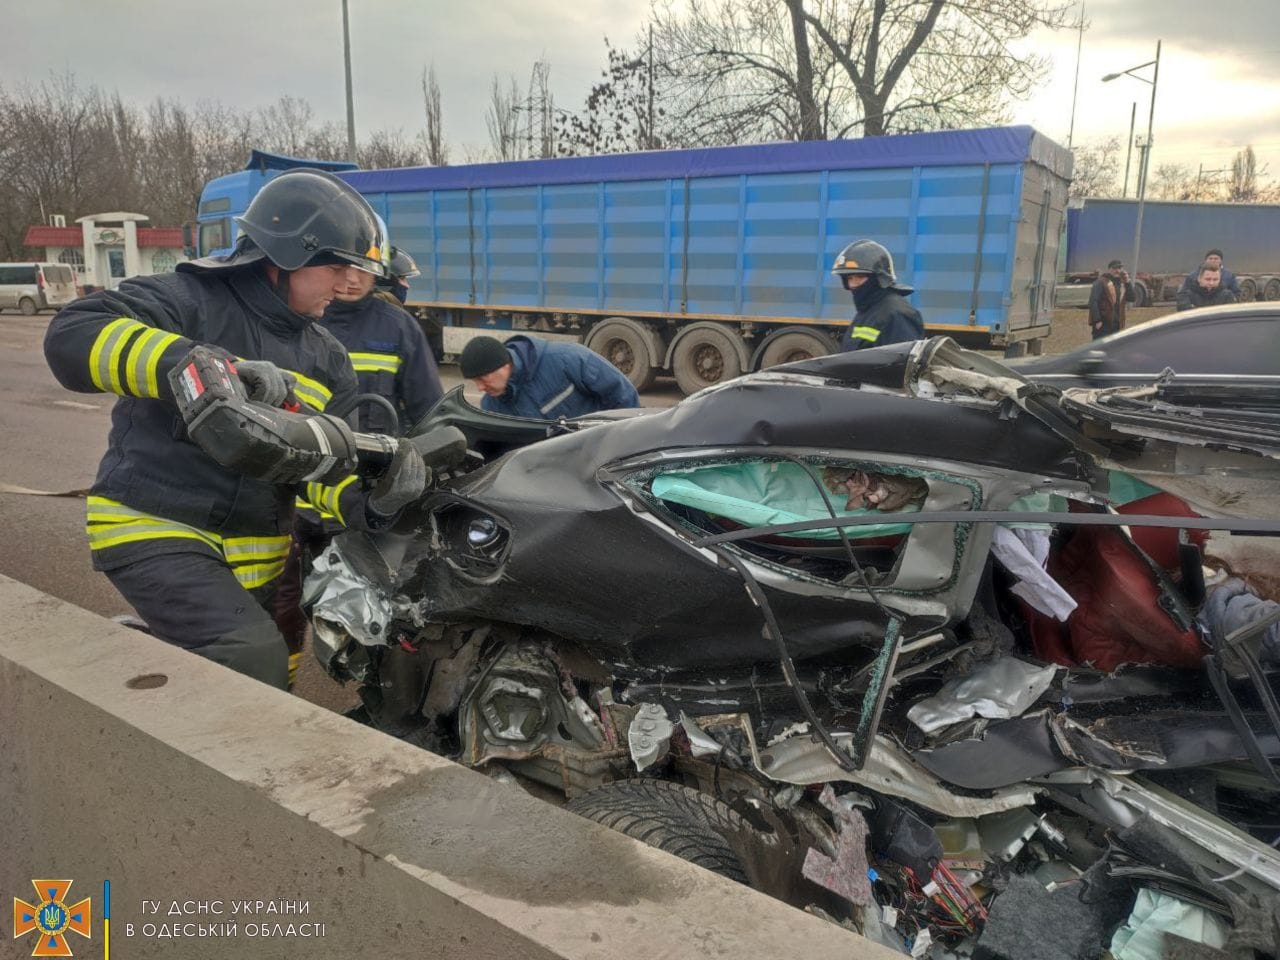 Σοκ στην ΑΕΚ:Σκοτώθηκε σε τροχαίο η σύζυγος του Νταντσένκο -Φωτο από τη διαλυμένη Mercedes